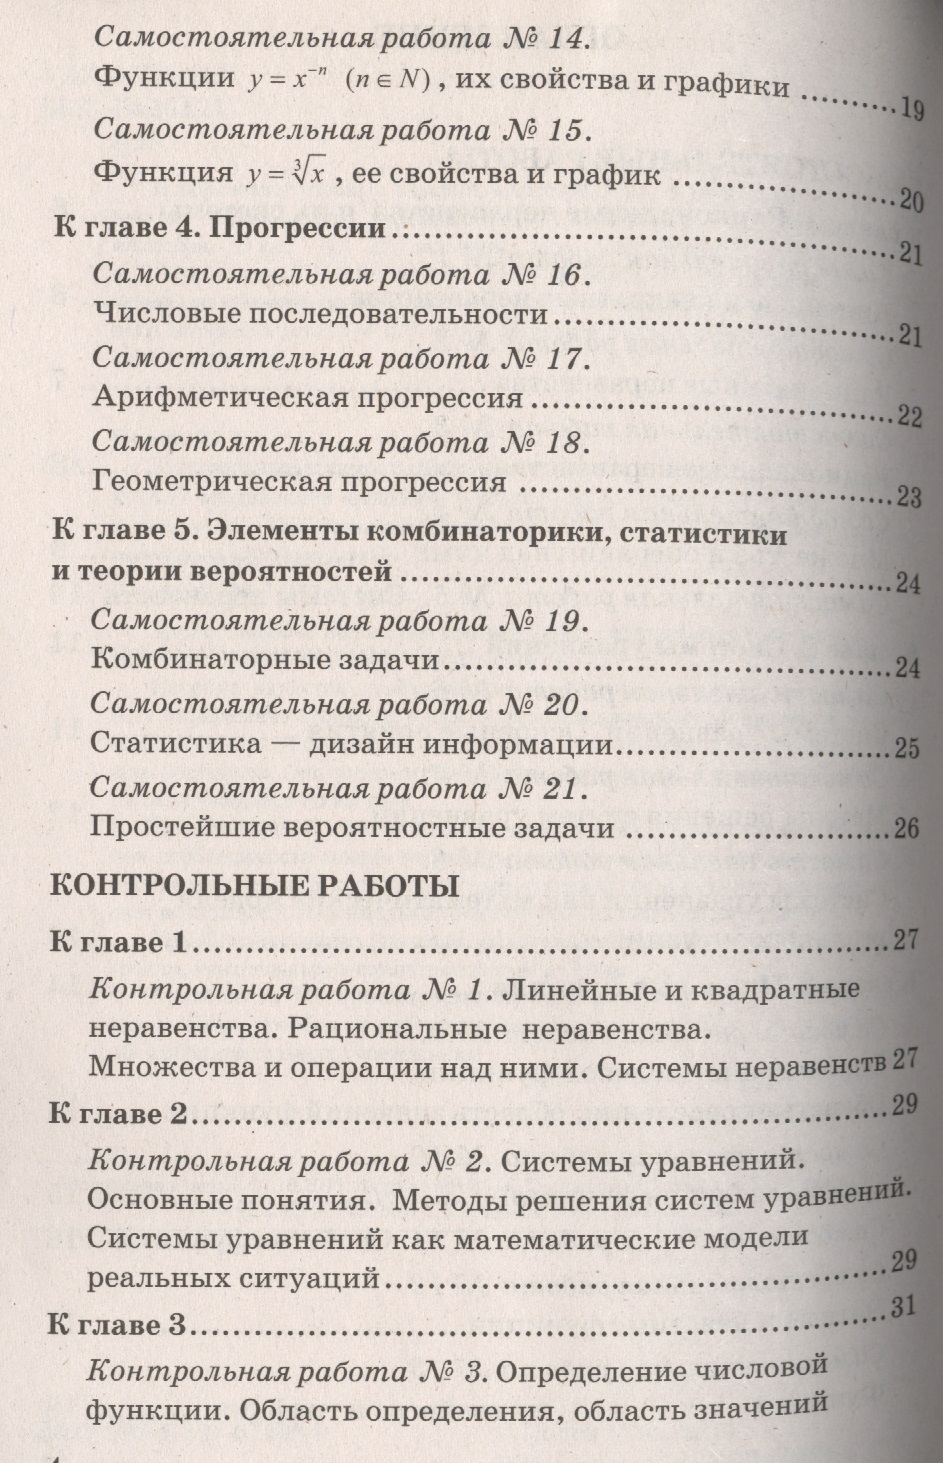 Контрольные работы к учебнику кравченко обществознания 9 класс